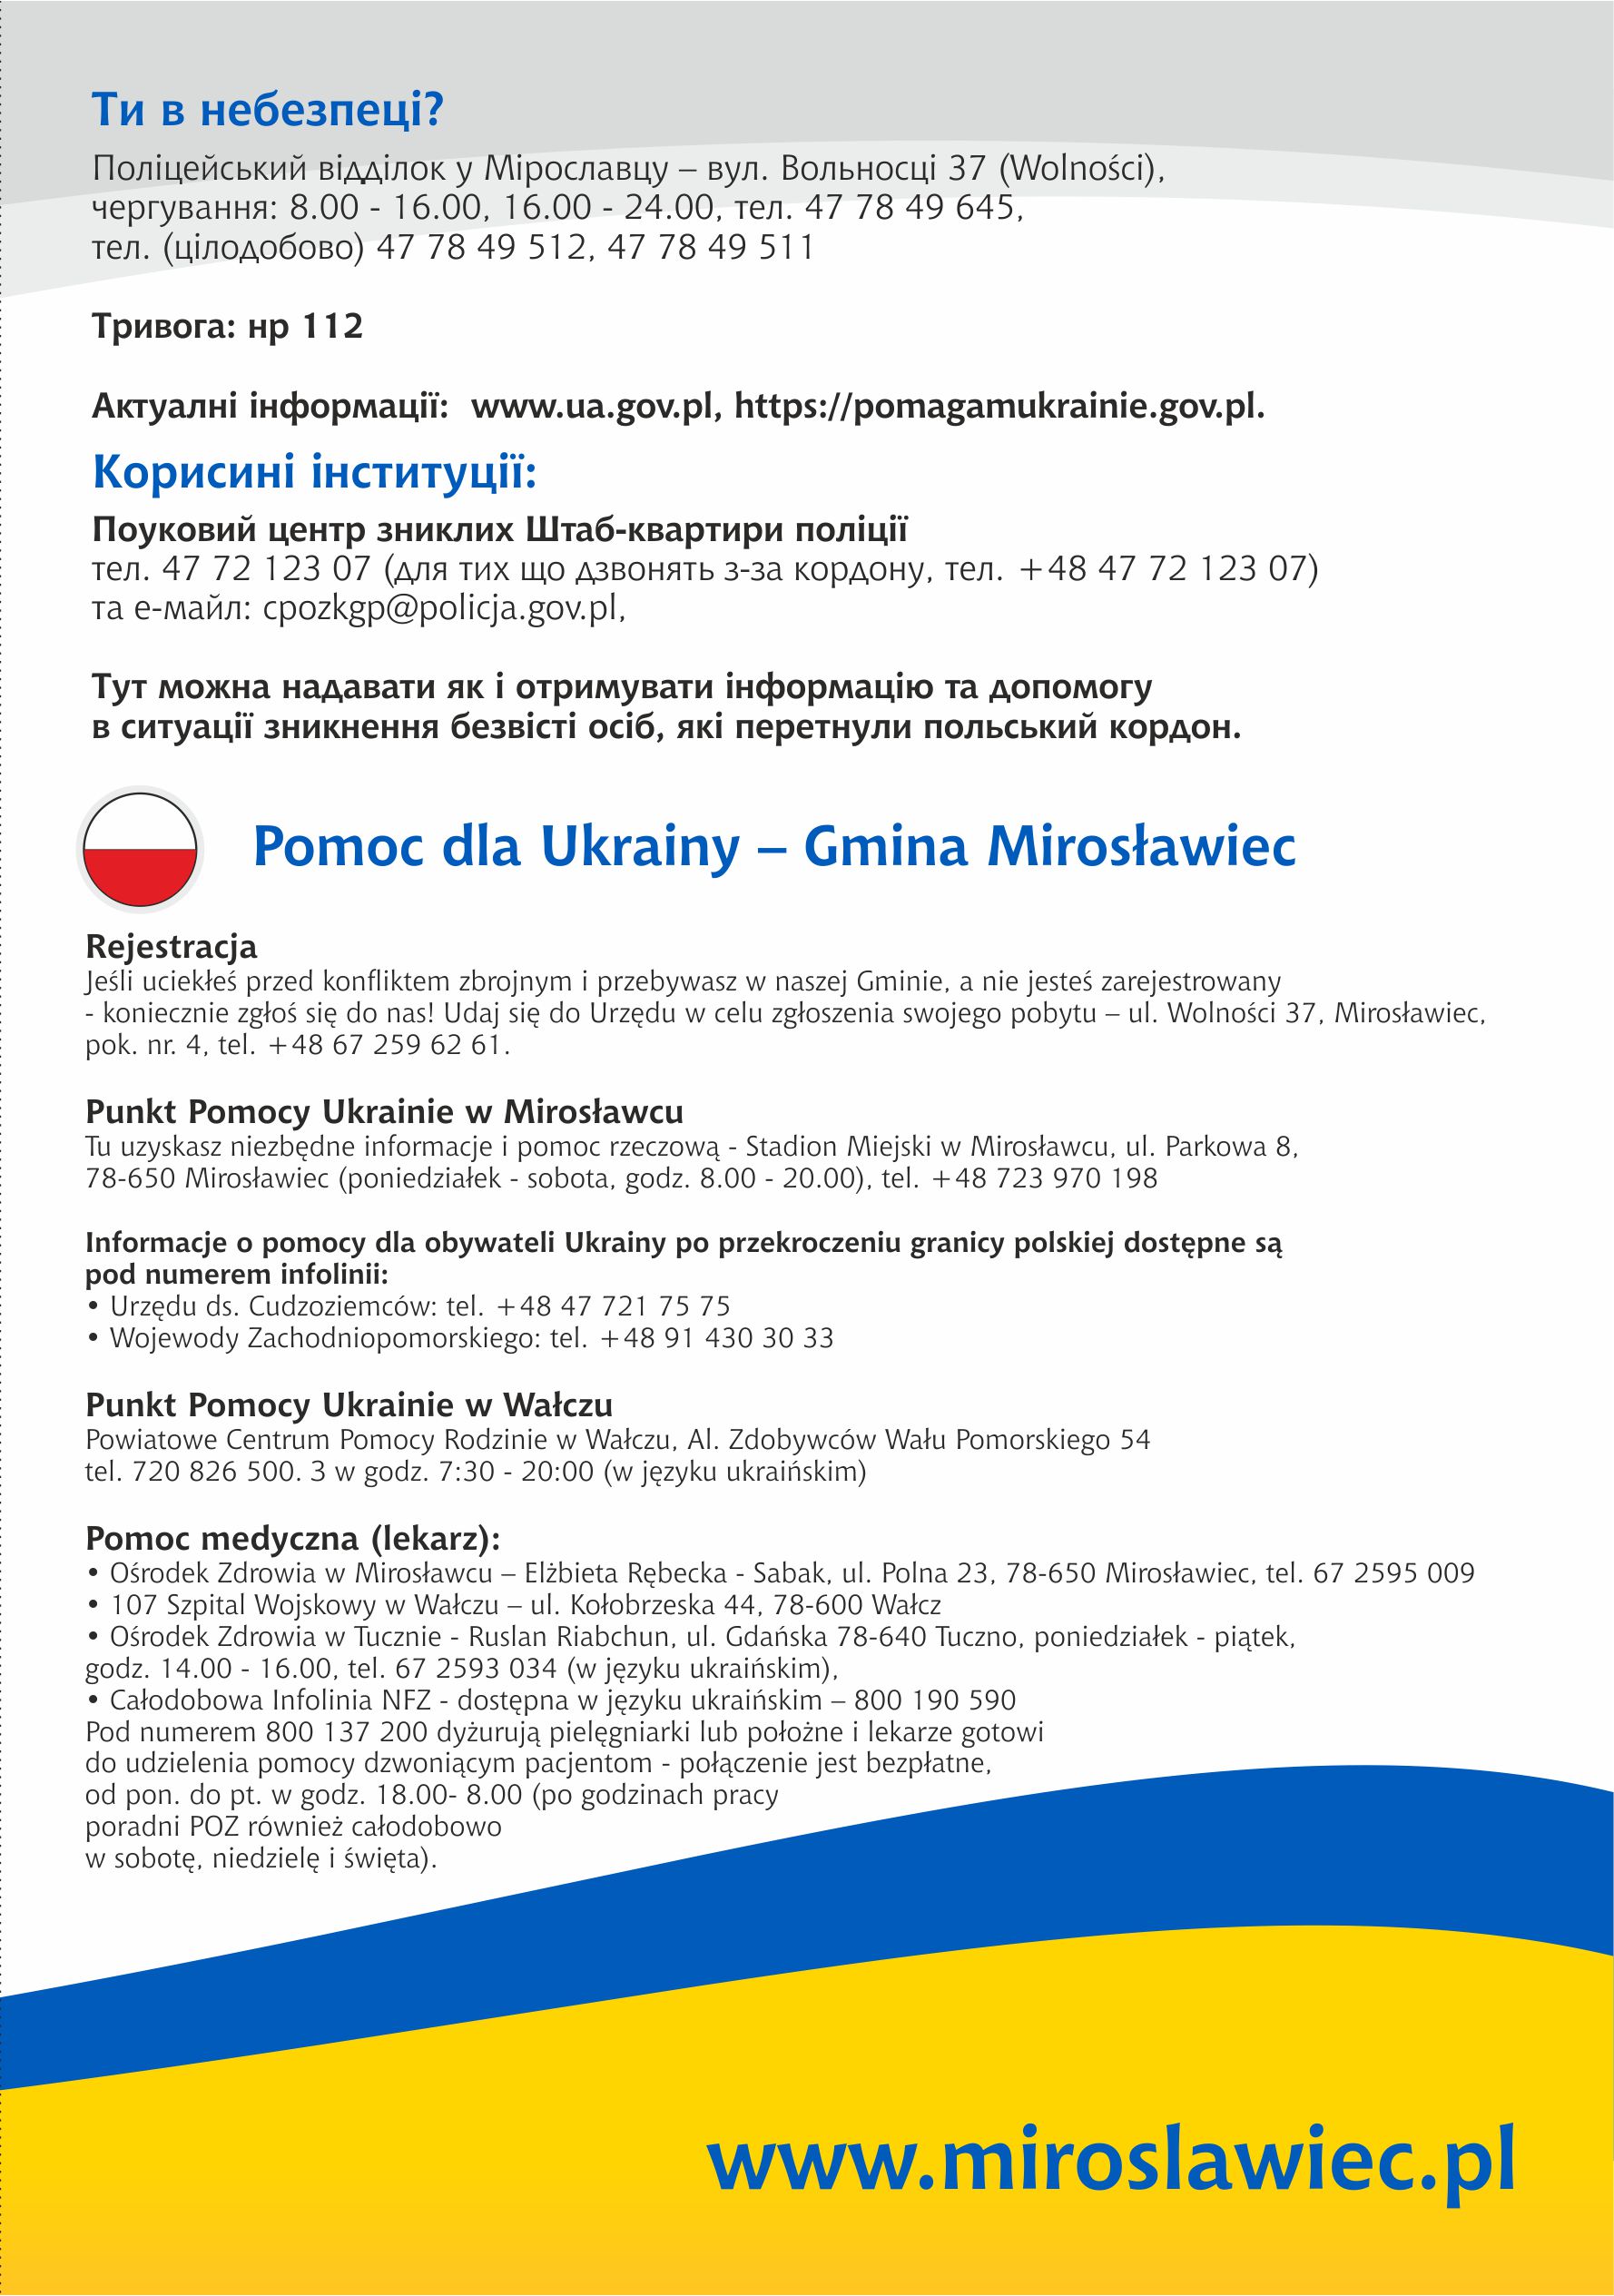 Mirosławiec pomaga Ukrainie - najważniejsze informacje w pigułce, w języku ukraińskim